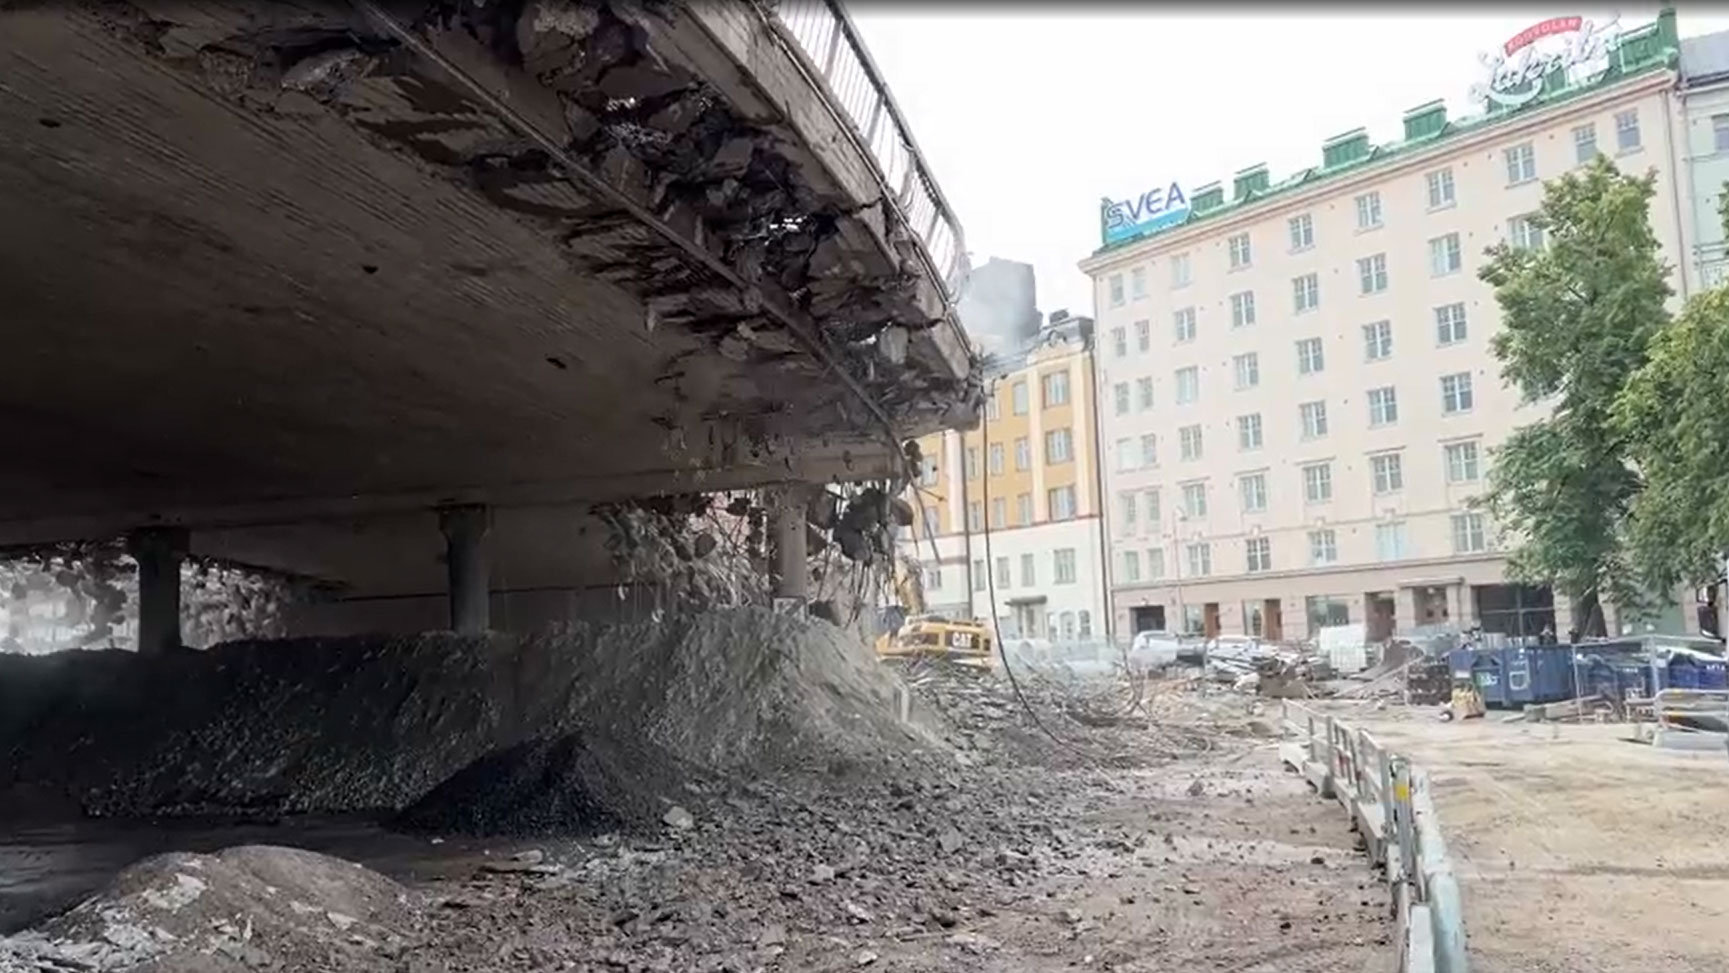 Tältä näyttää, kun Hakaniemen silta häviää Helsingissä – sillan rakentajat tekivät virheen, ja nyt se pitää purkaa